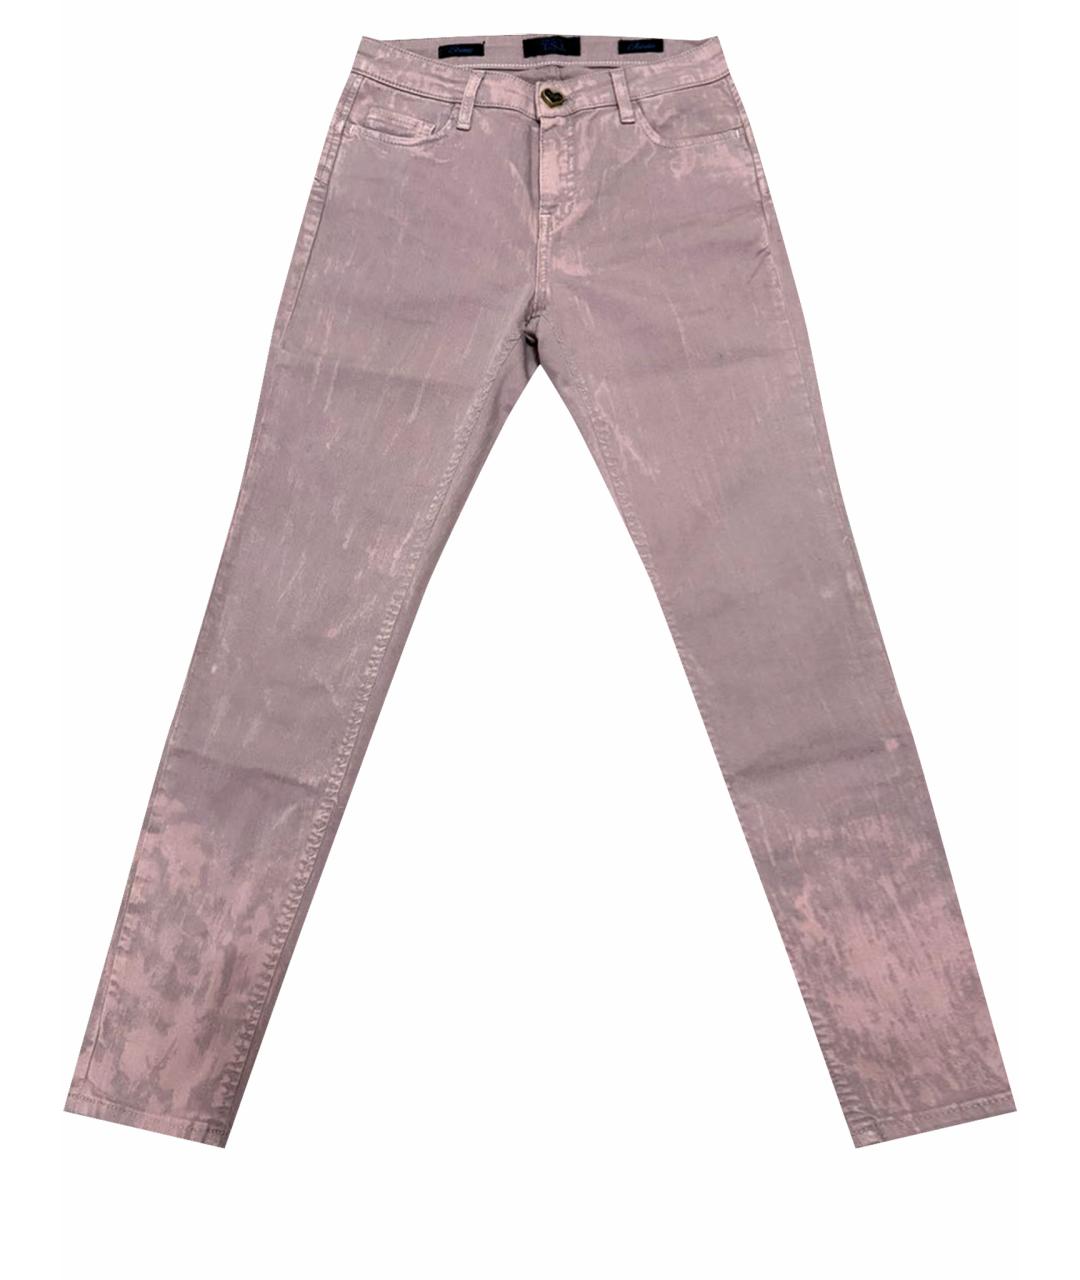 TWIN-SET Розовые хлопковые джинсы слим, фото 1